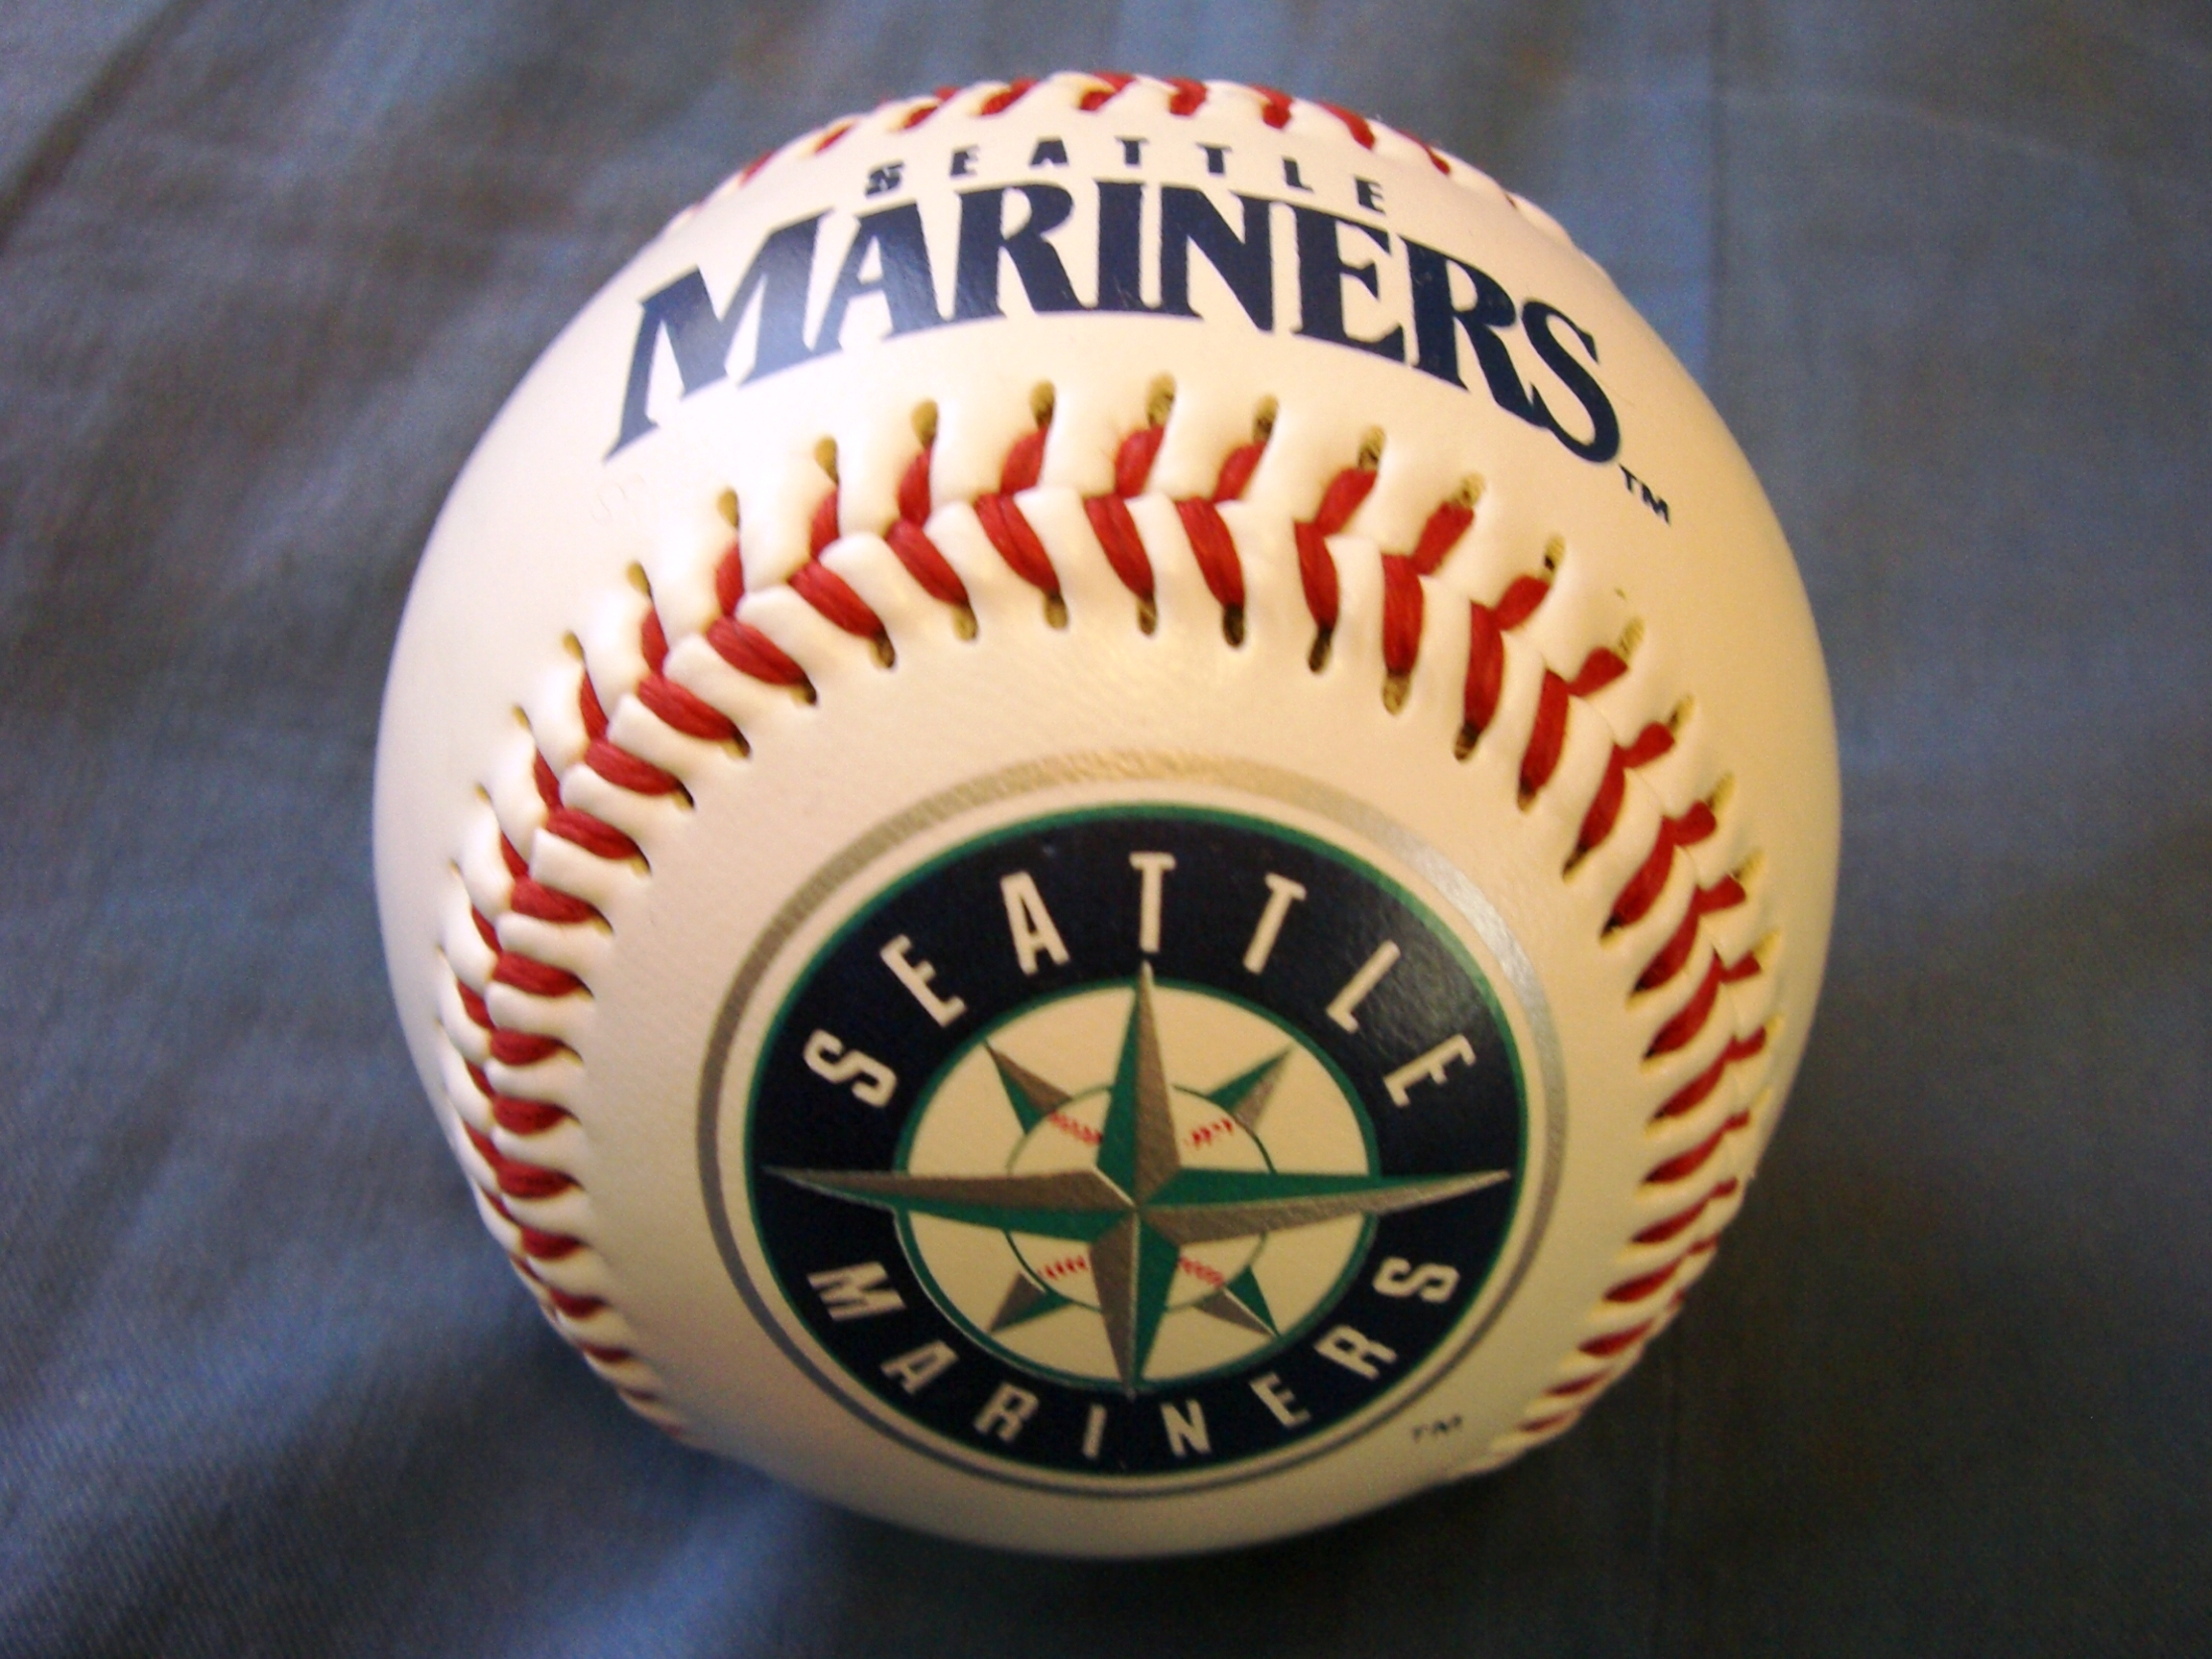 Seattle Mariners - Wikipedia